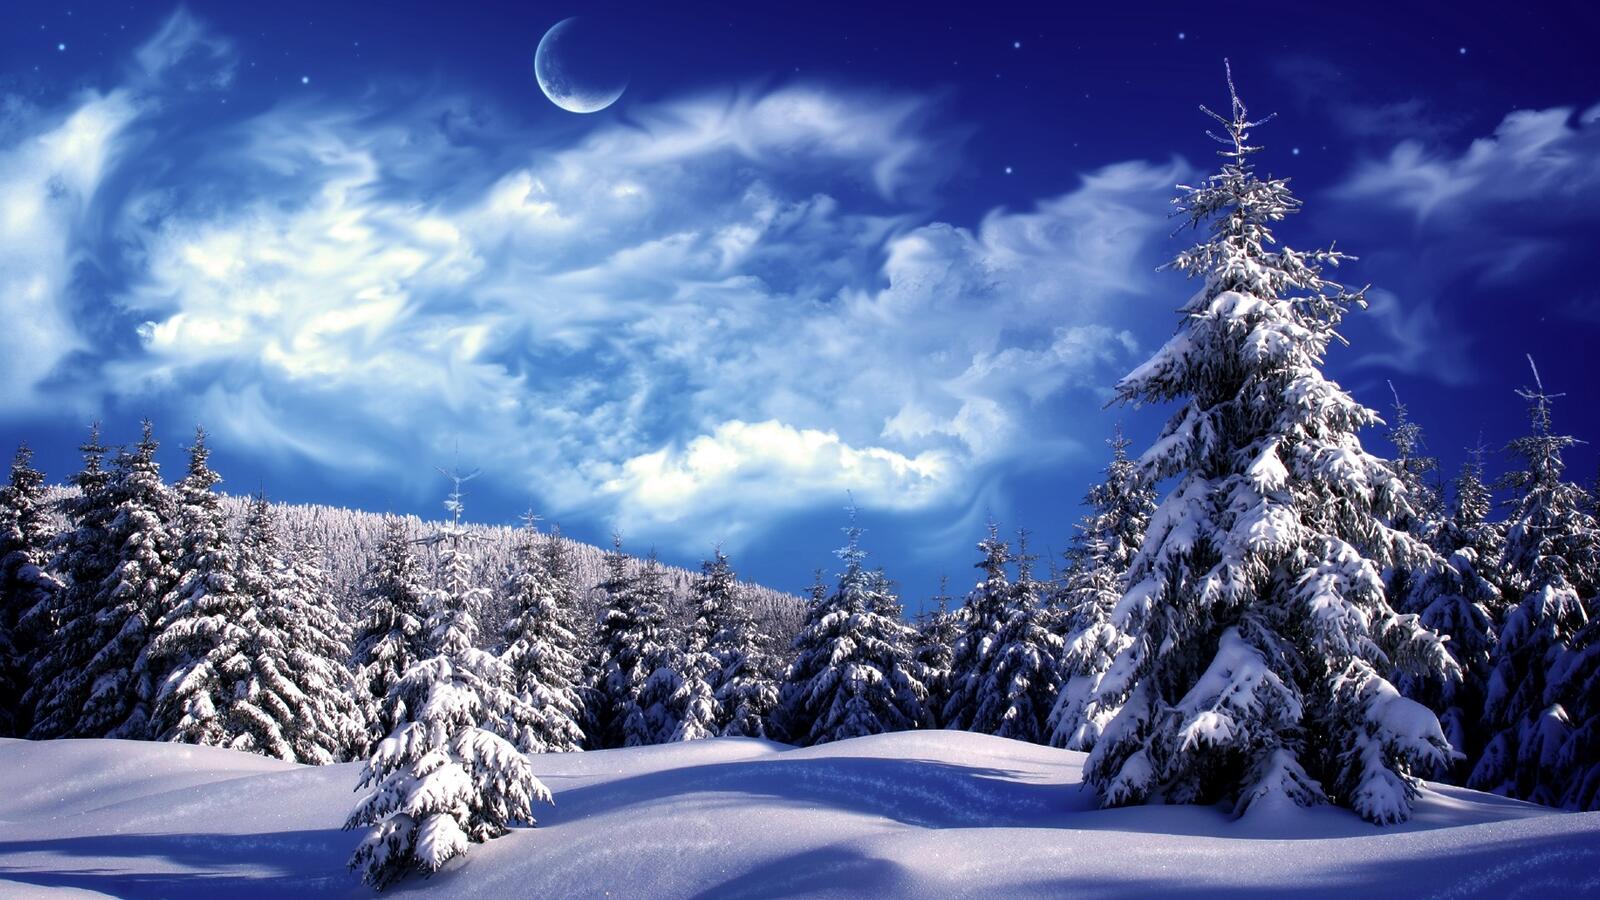 Бесплатное фото Еловый зимний лес укутанный сугробами, а в небе красивая яркая Луна